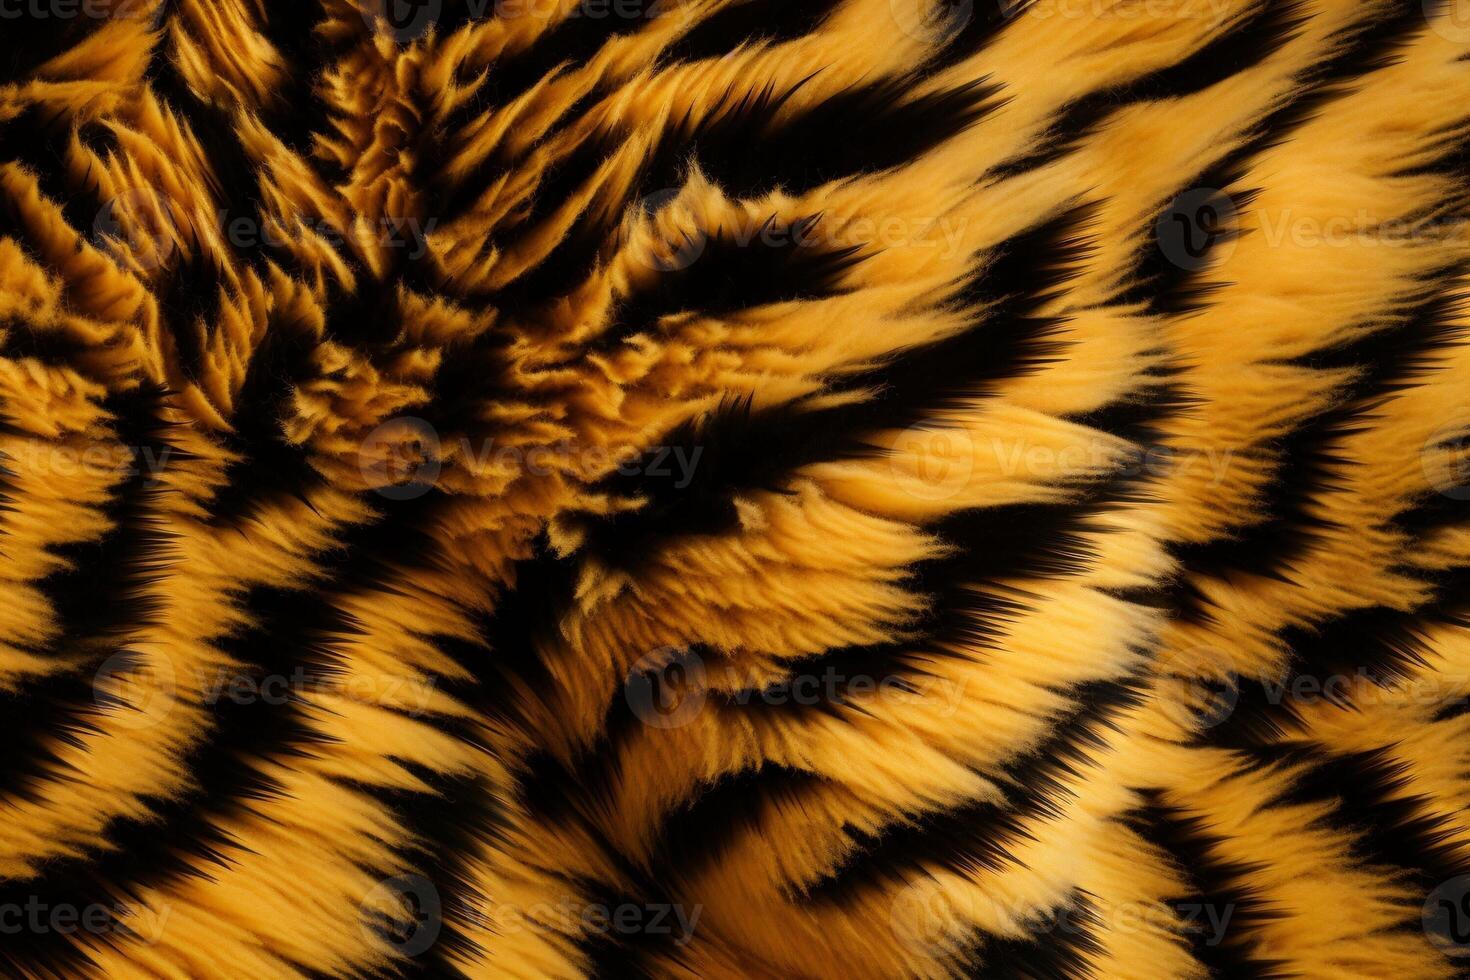 tigre pelle pelliccia struttura, tigre pelliccia sfondo, soffice tigre pelle pelliccia struttura sfondo, tigre pelle pelliccia modello, animale pelle pelliccia struttura, foto